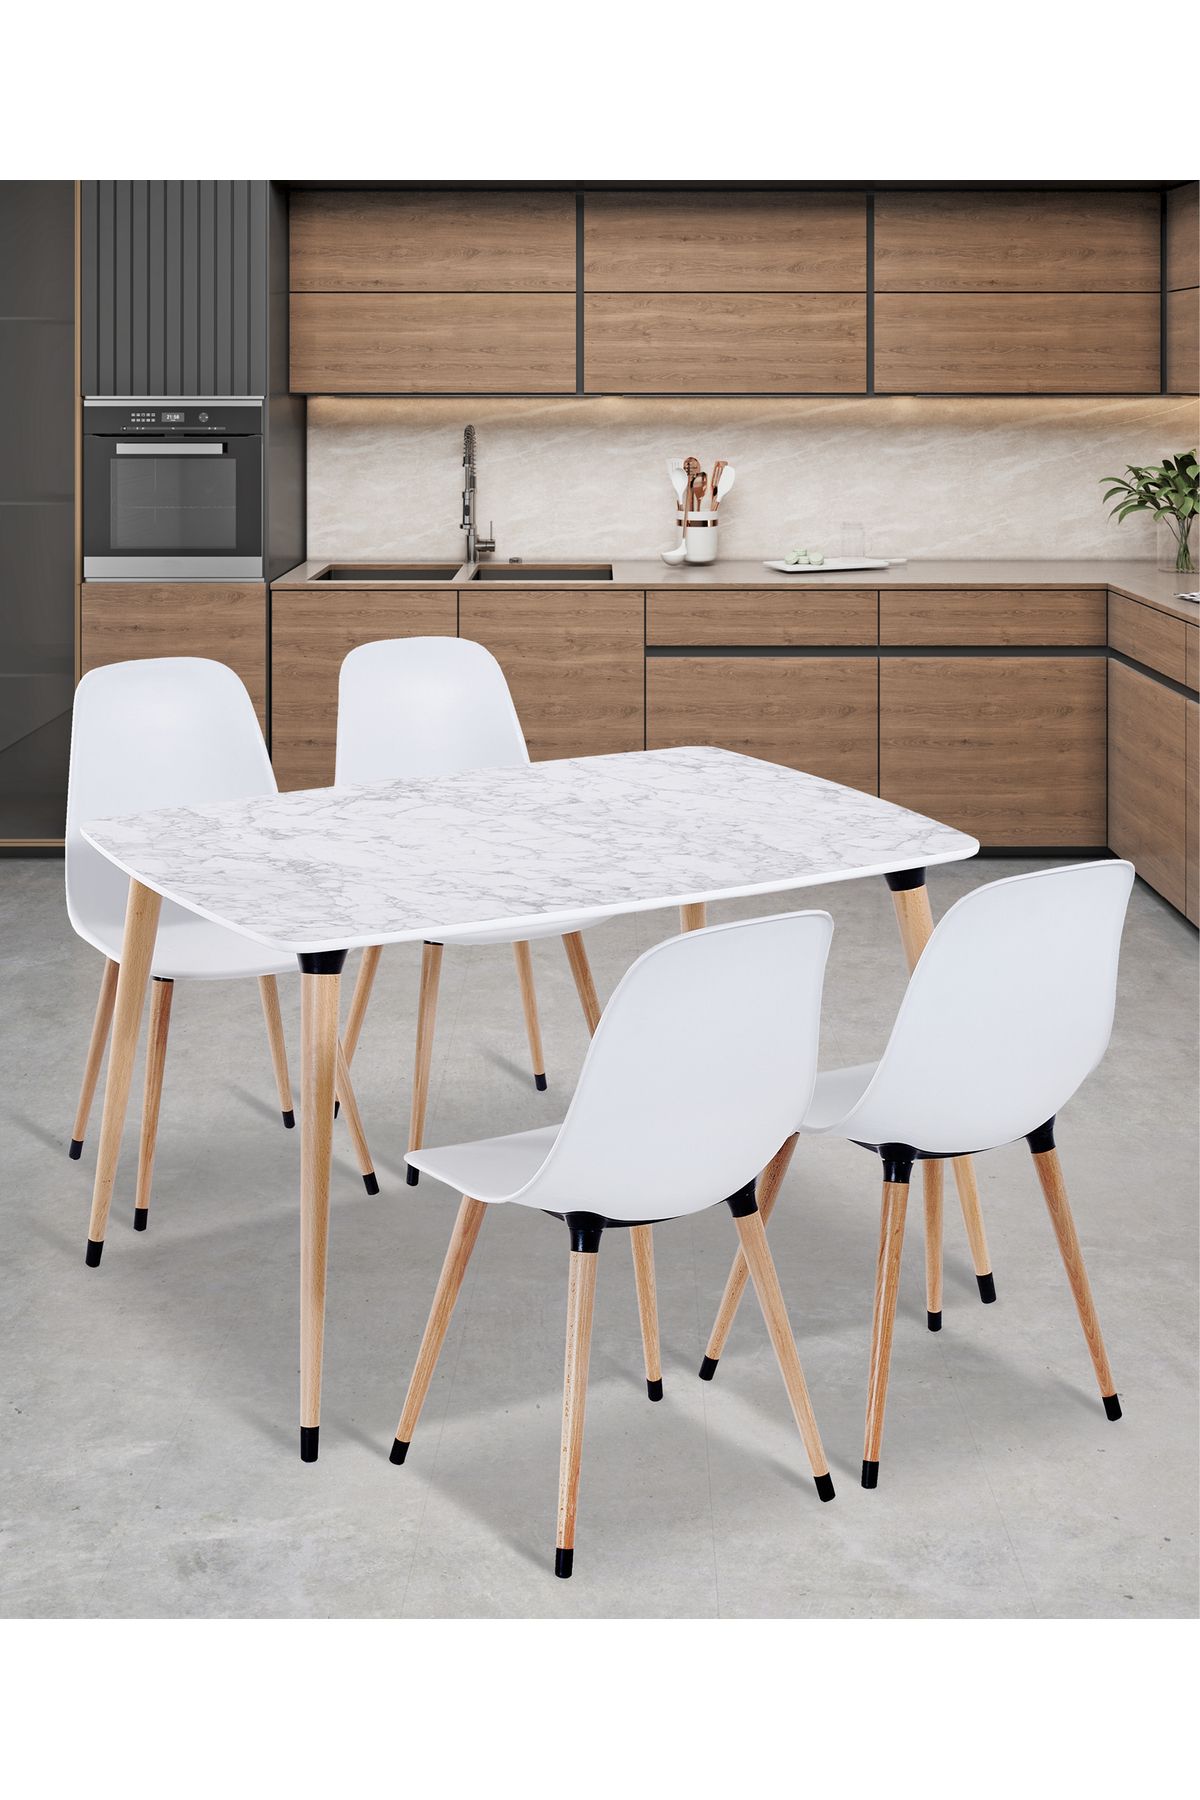 Estelia Yemek Masası Takımı Mutfak Masası 90x120 Cm Ahşap Ayaklı Beyaz Masa 4 Adet Abant Beyaz Sandalye